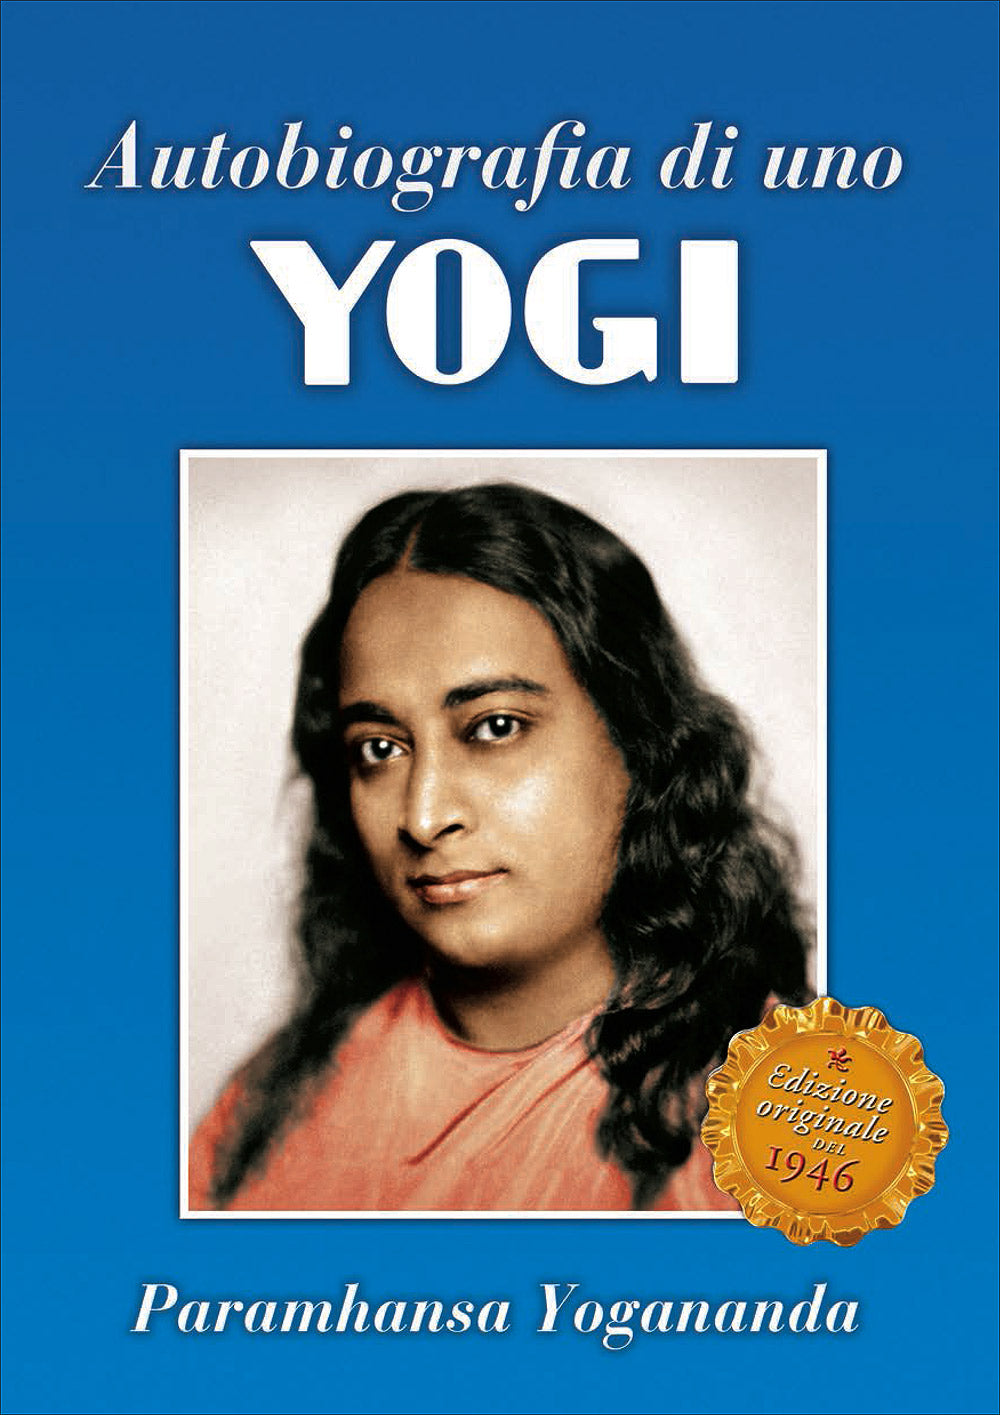 Autobiografia di uno Yogi::Edizione originale del 1946